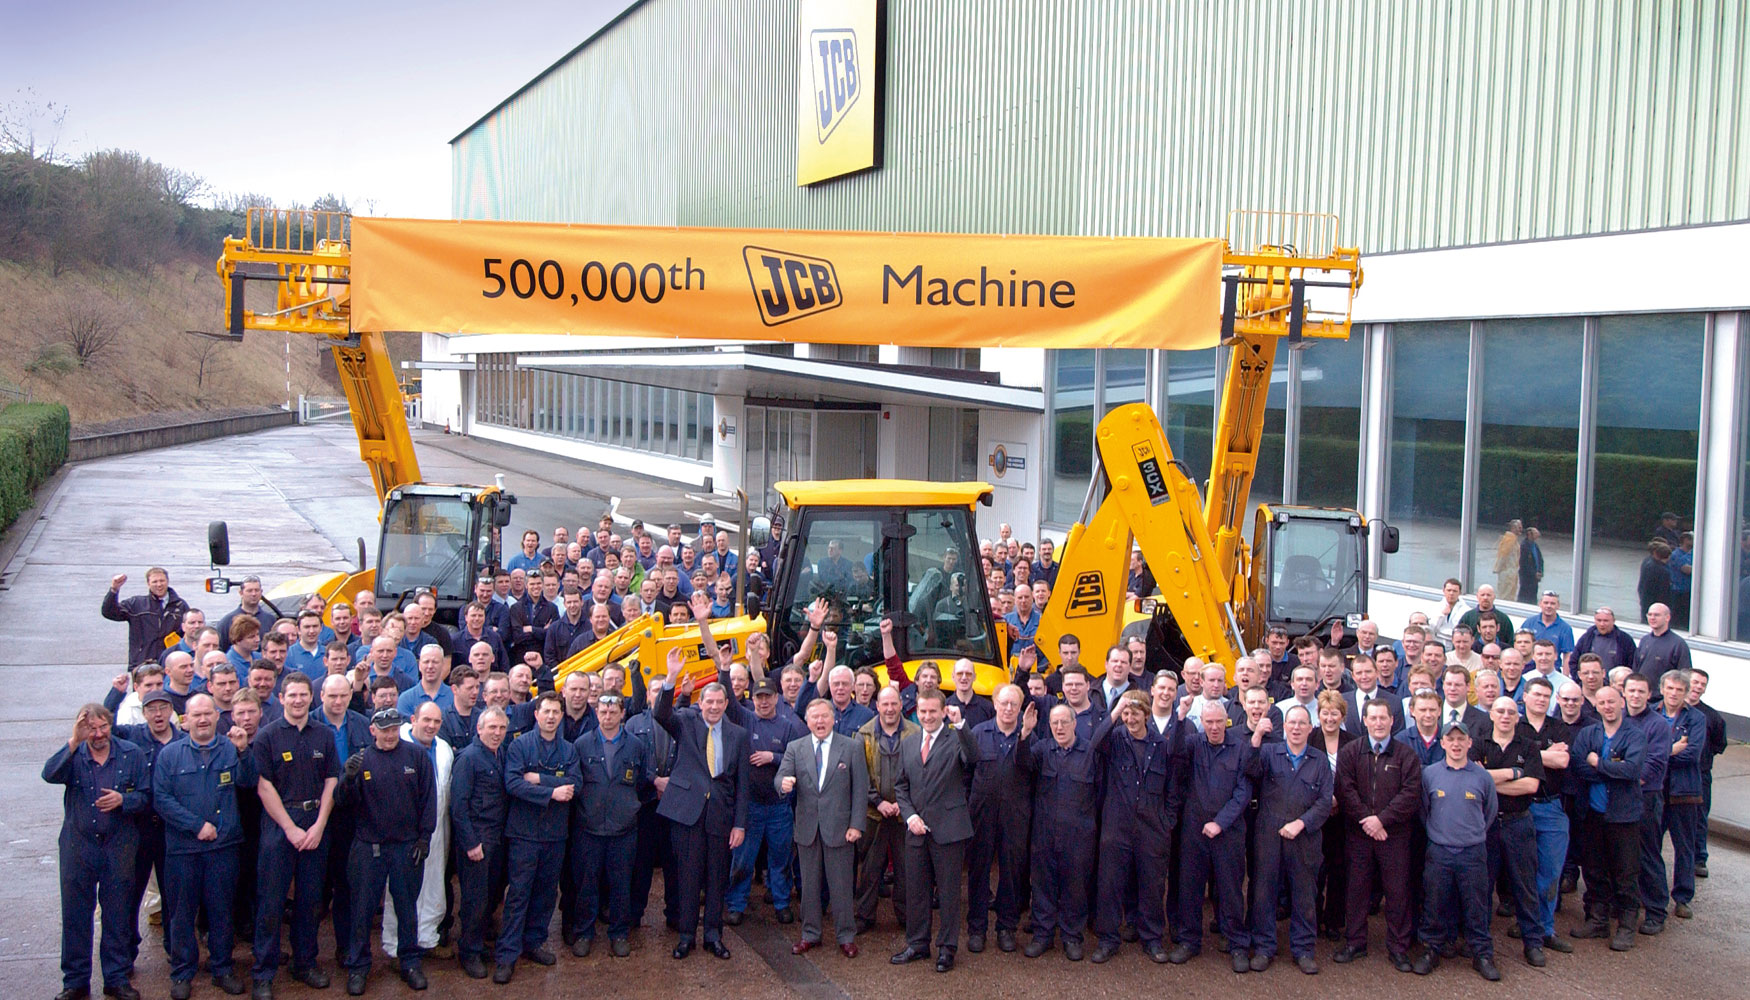 2004. Reunin de los empleados en la sede mundial para celebrar el lanzamiento de la mquina nmero 500.000